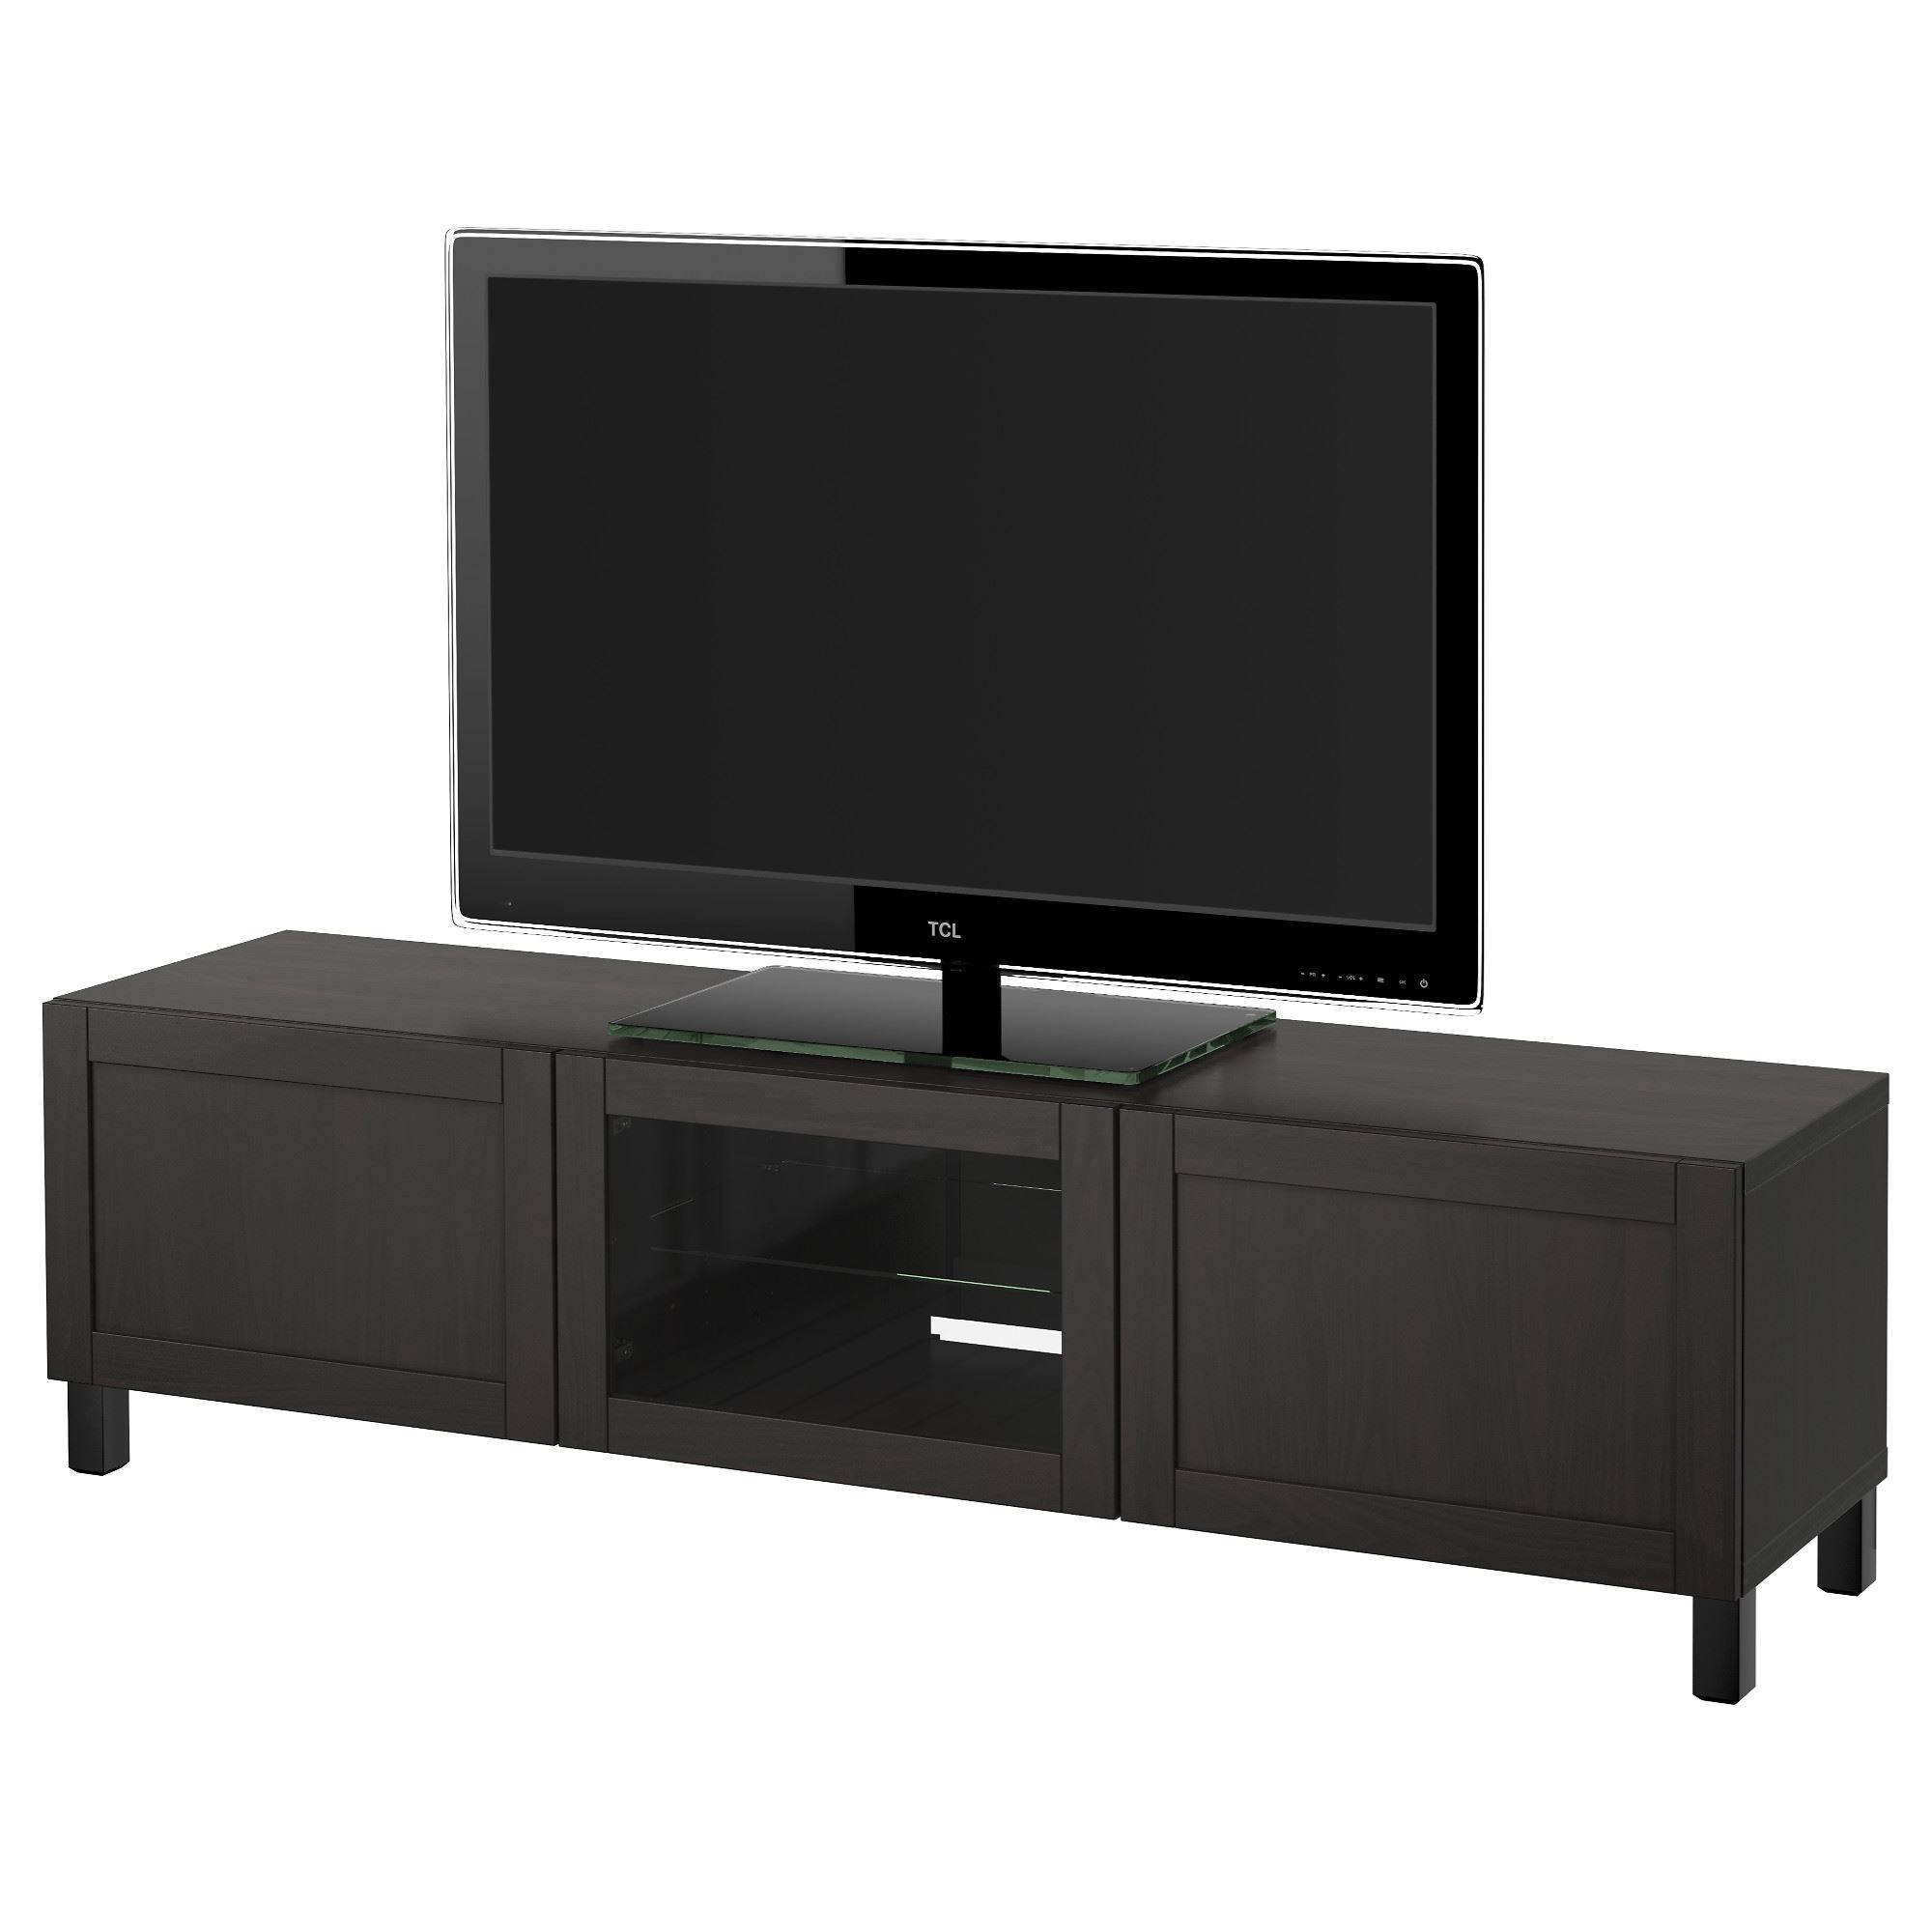 BESTA/HANVIKEN tv sehpası siyah 180x40x48 cm IKEA TVDolap Sistemleri